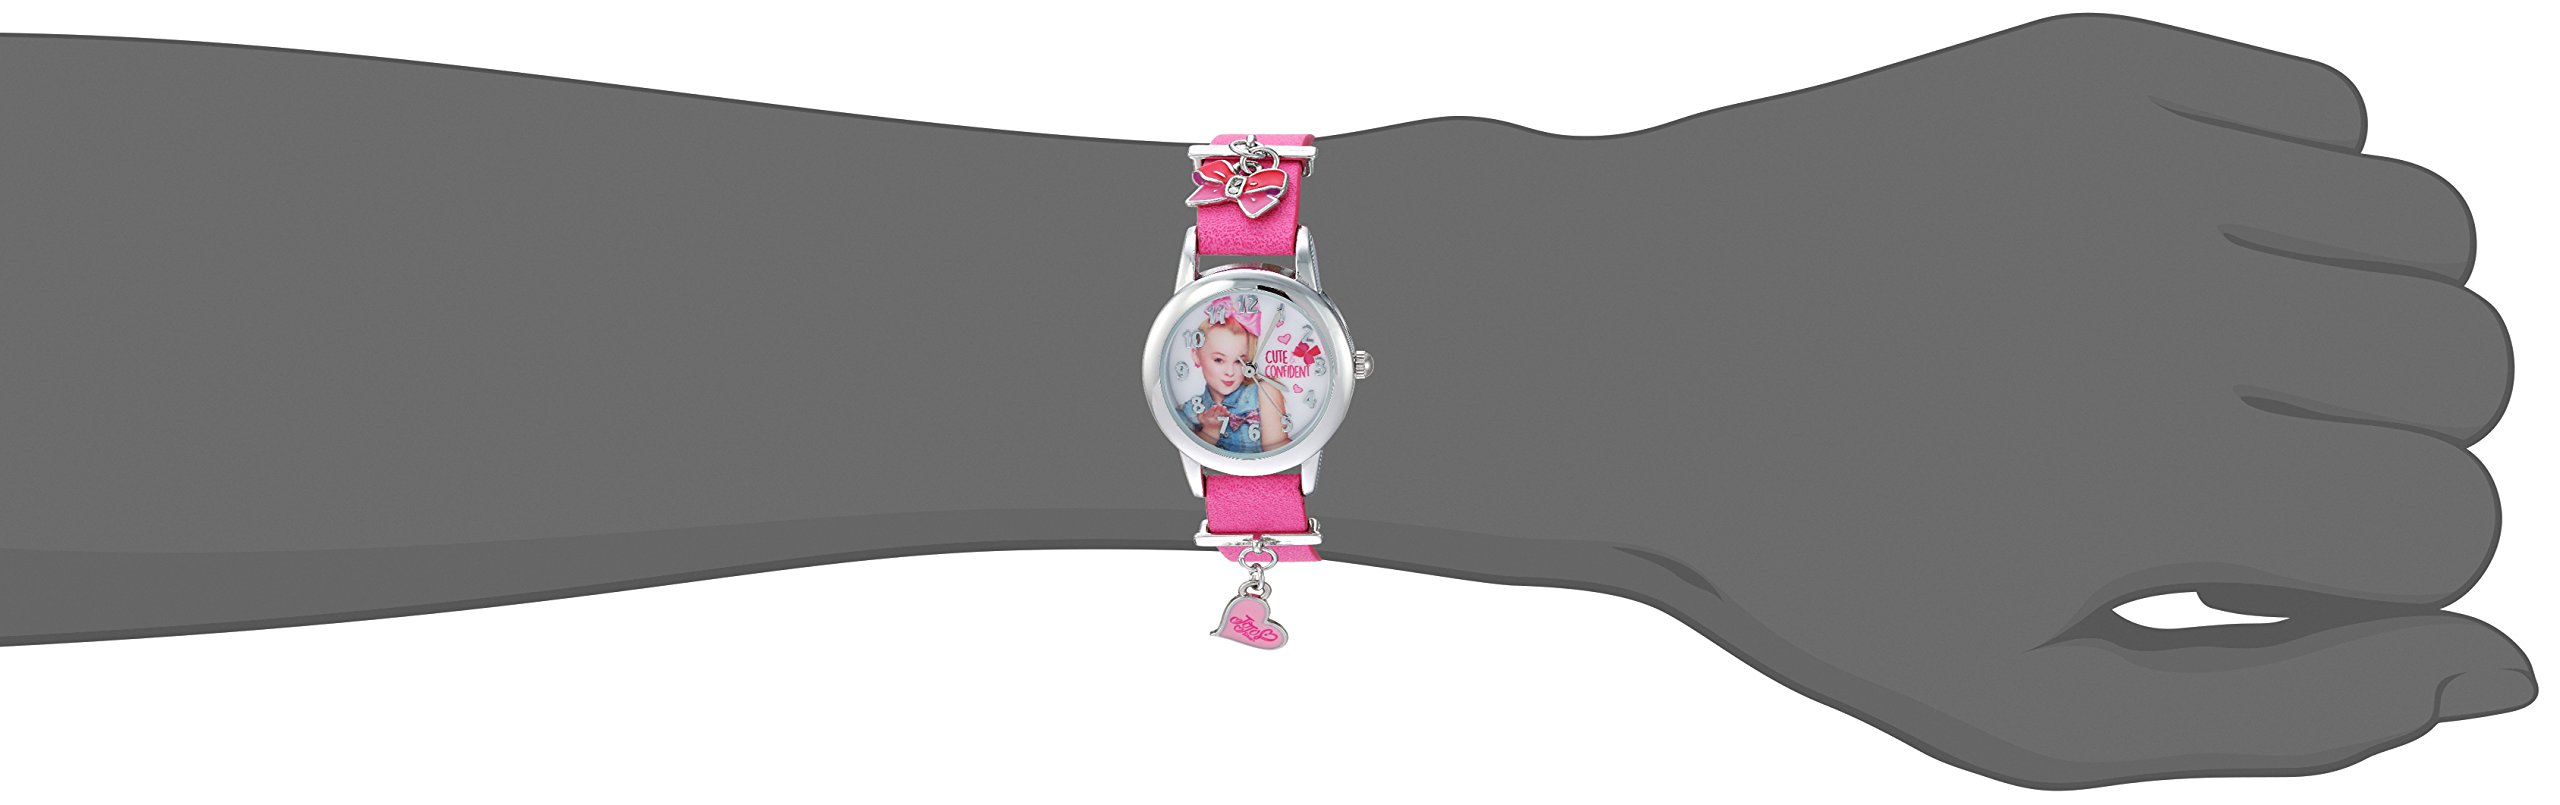 Accutime JoJo Siwa Girls' Analog-Quartz Watch with Leather-Synthetic Strap, Pink, 12 (Model: JOJ5002)